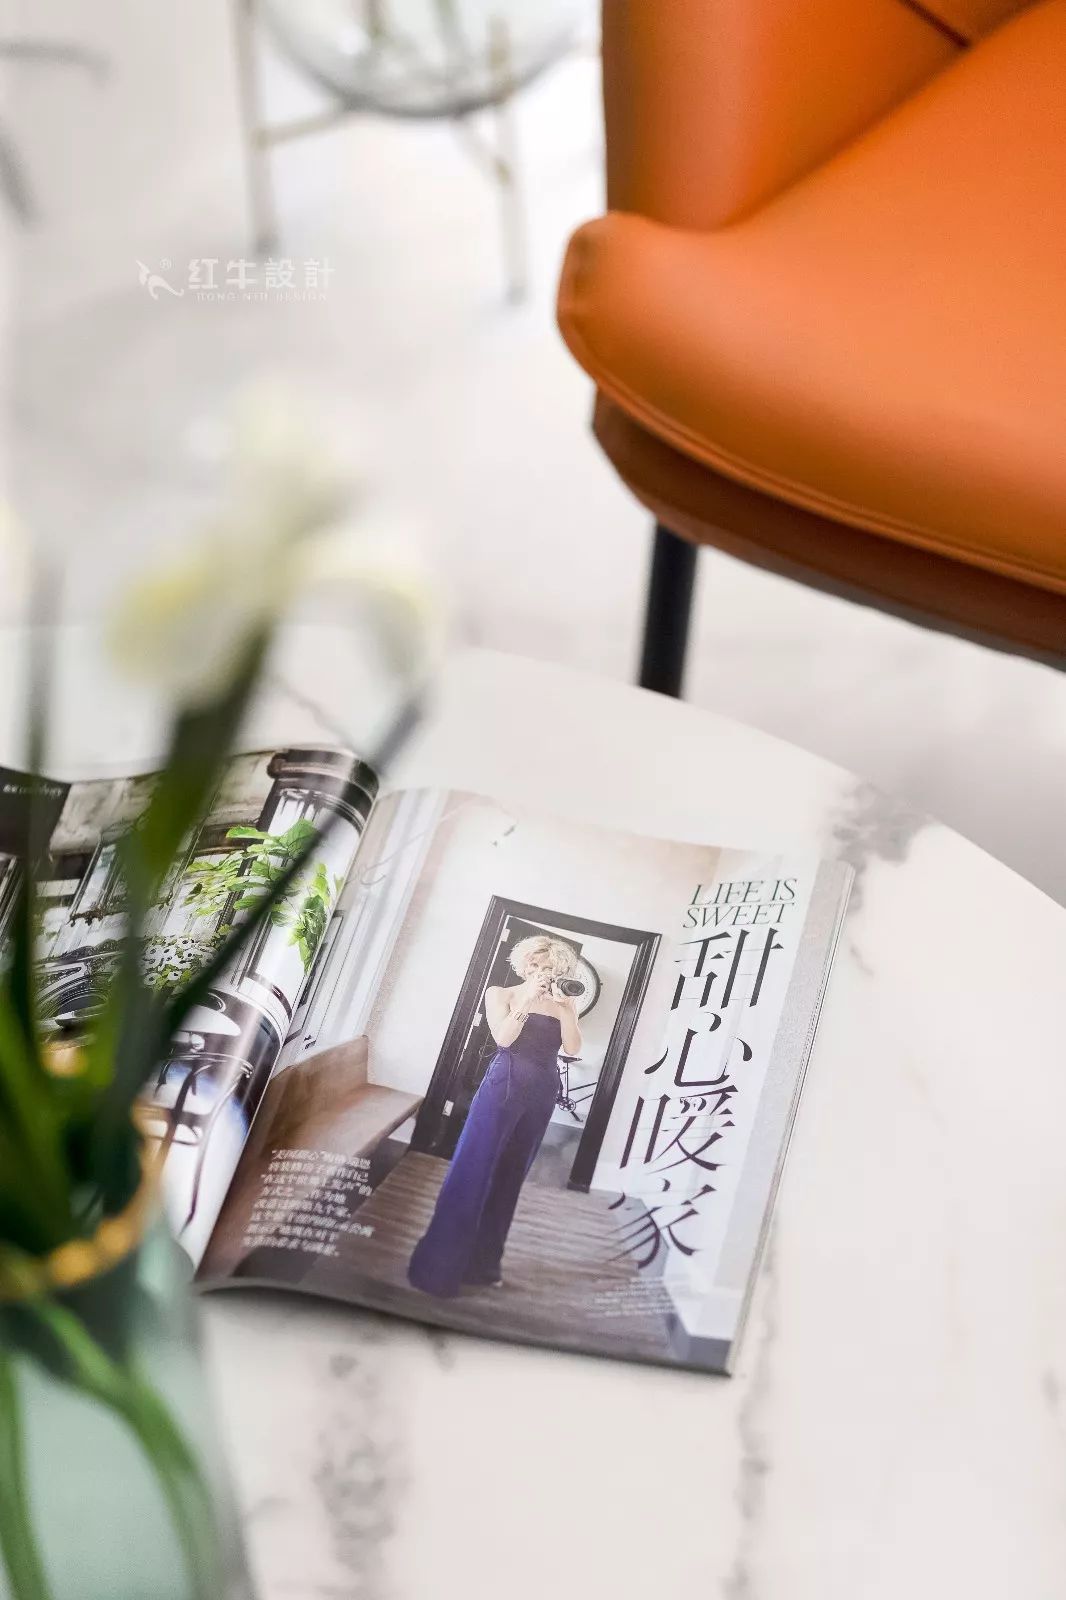 南京雅居樂145㎡現代簡約--演繹當代生活美學06客廳設計05小飾品